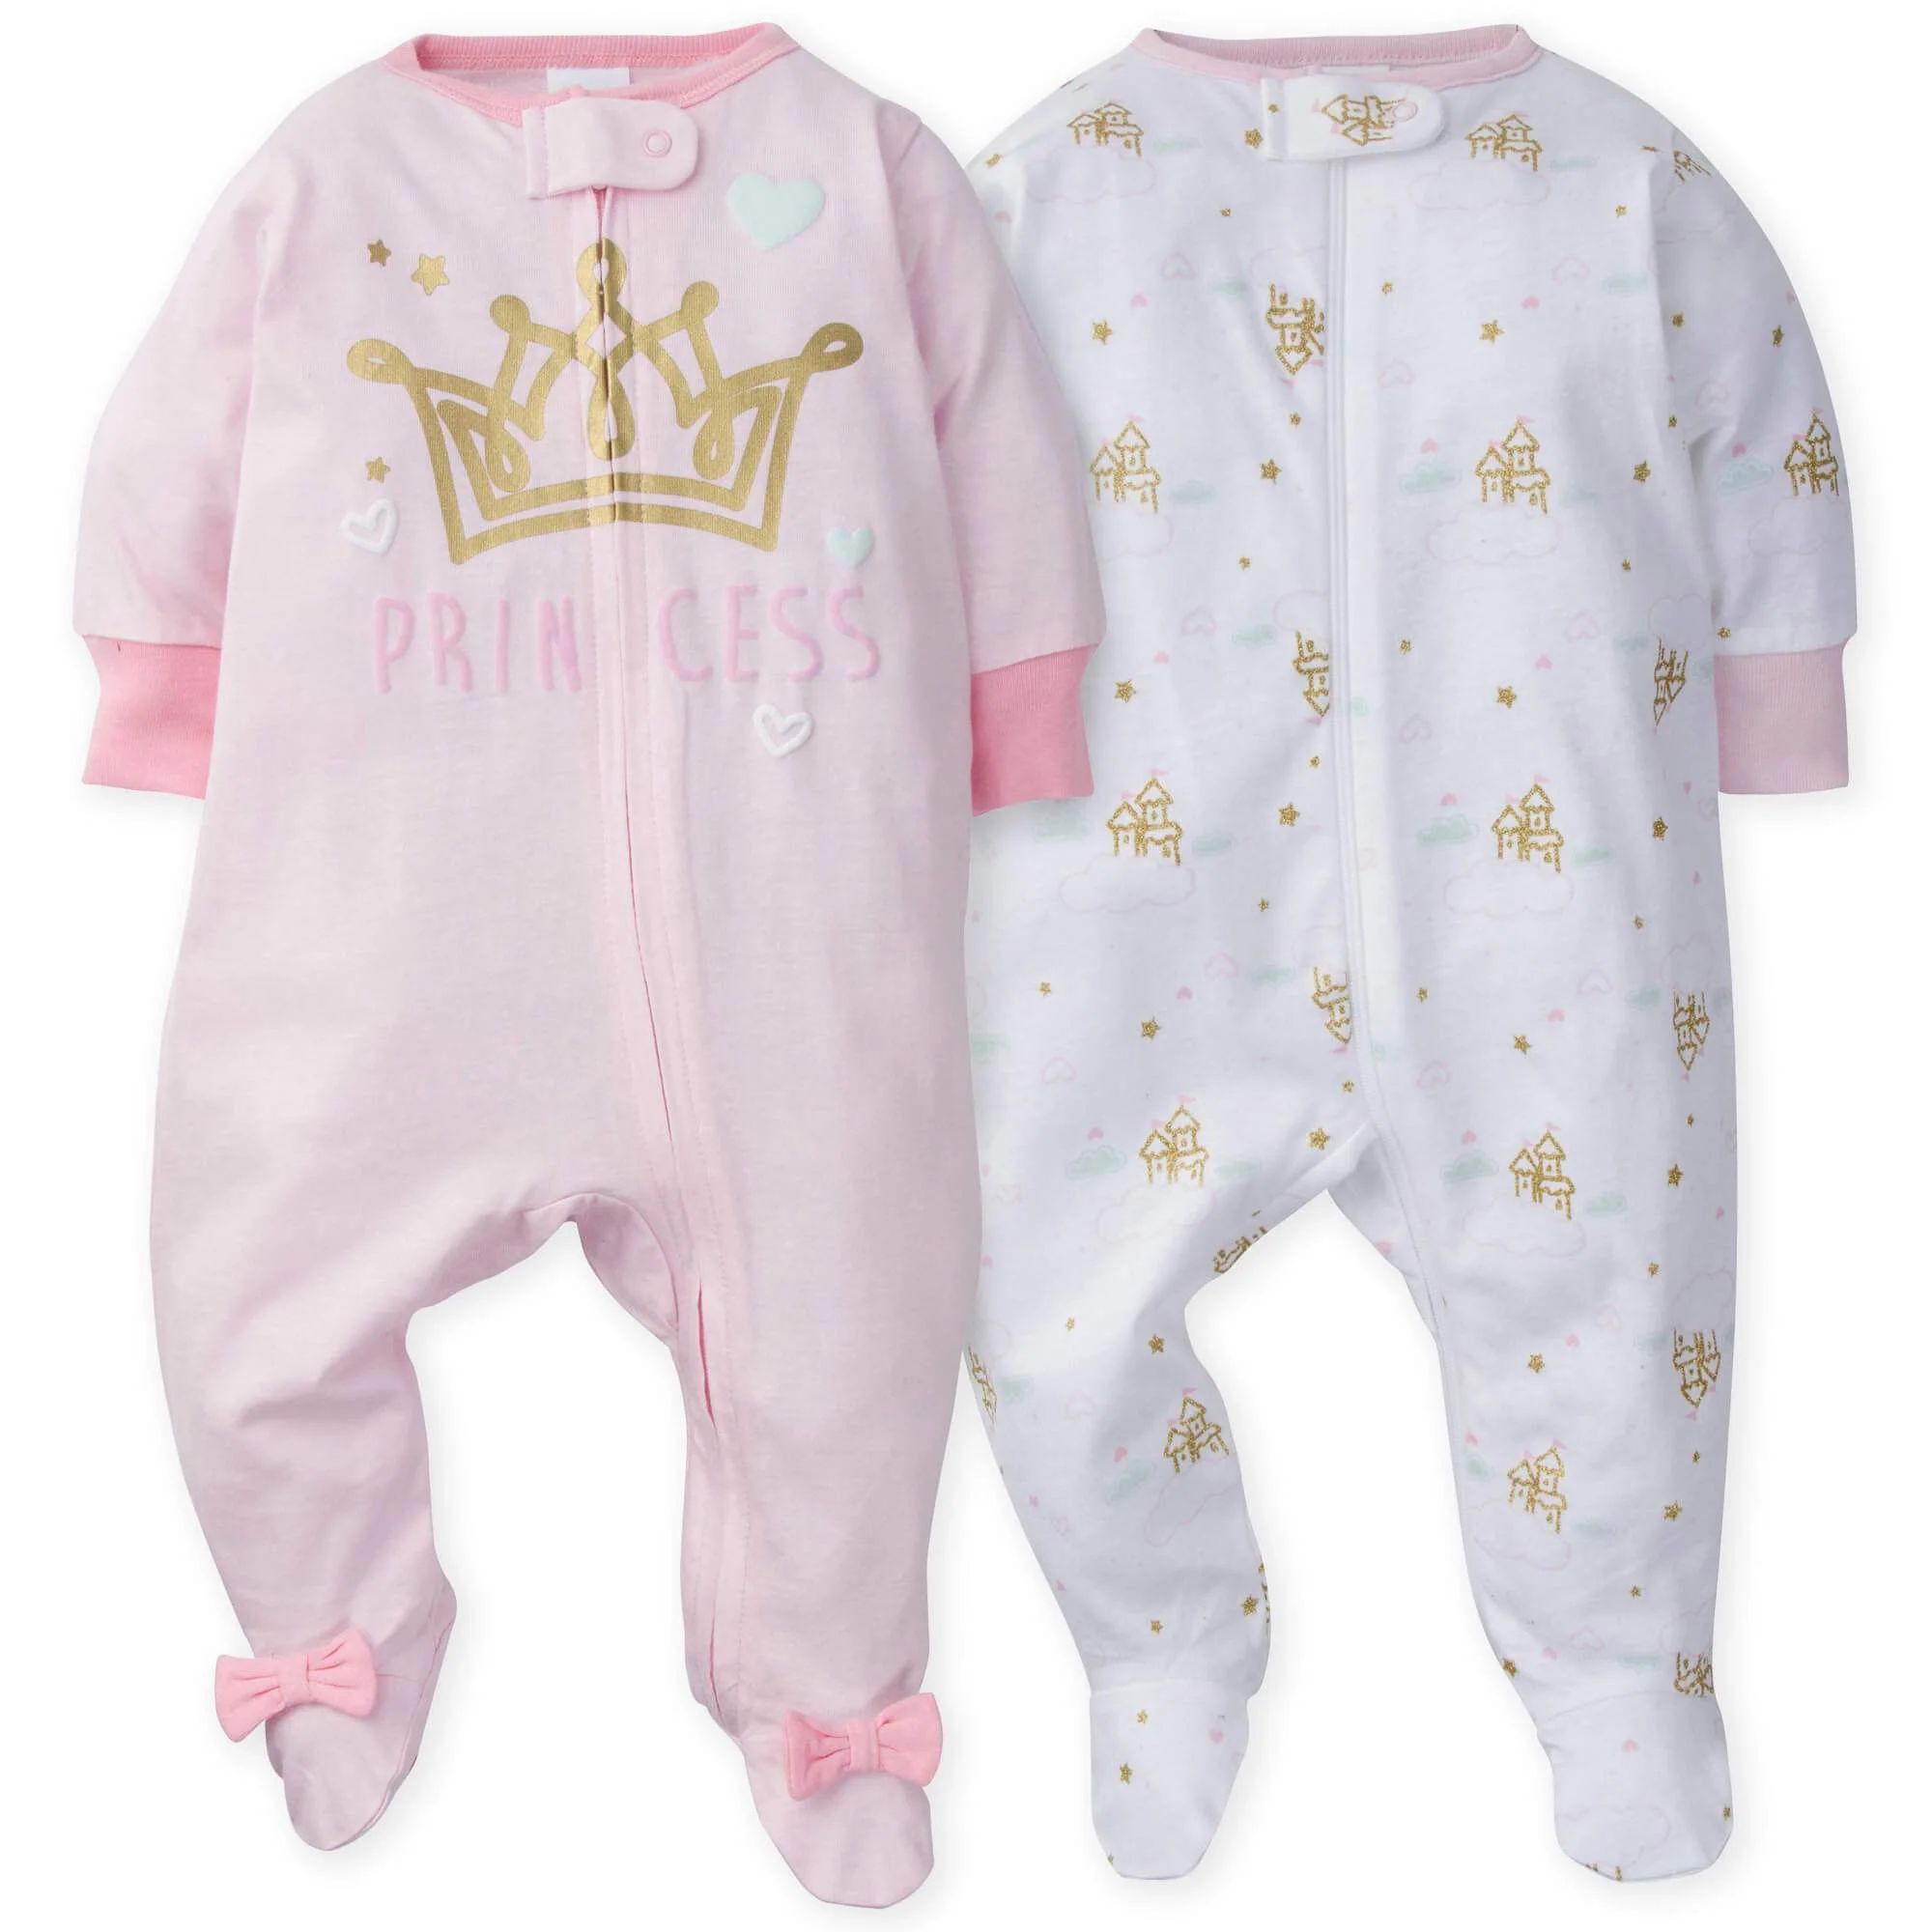 2-Pack Baby Girls Princess Castle Sleep N' Plays | Gerber Childrenswear